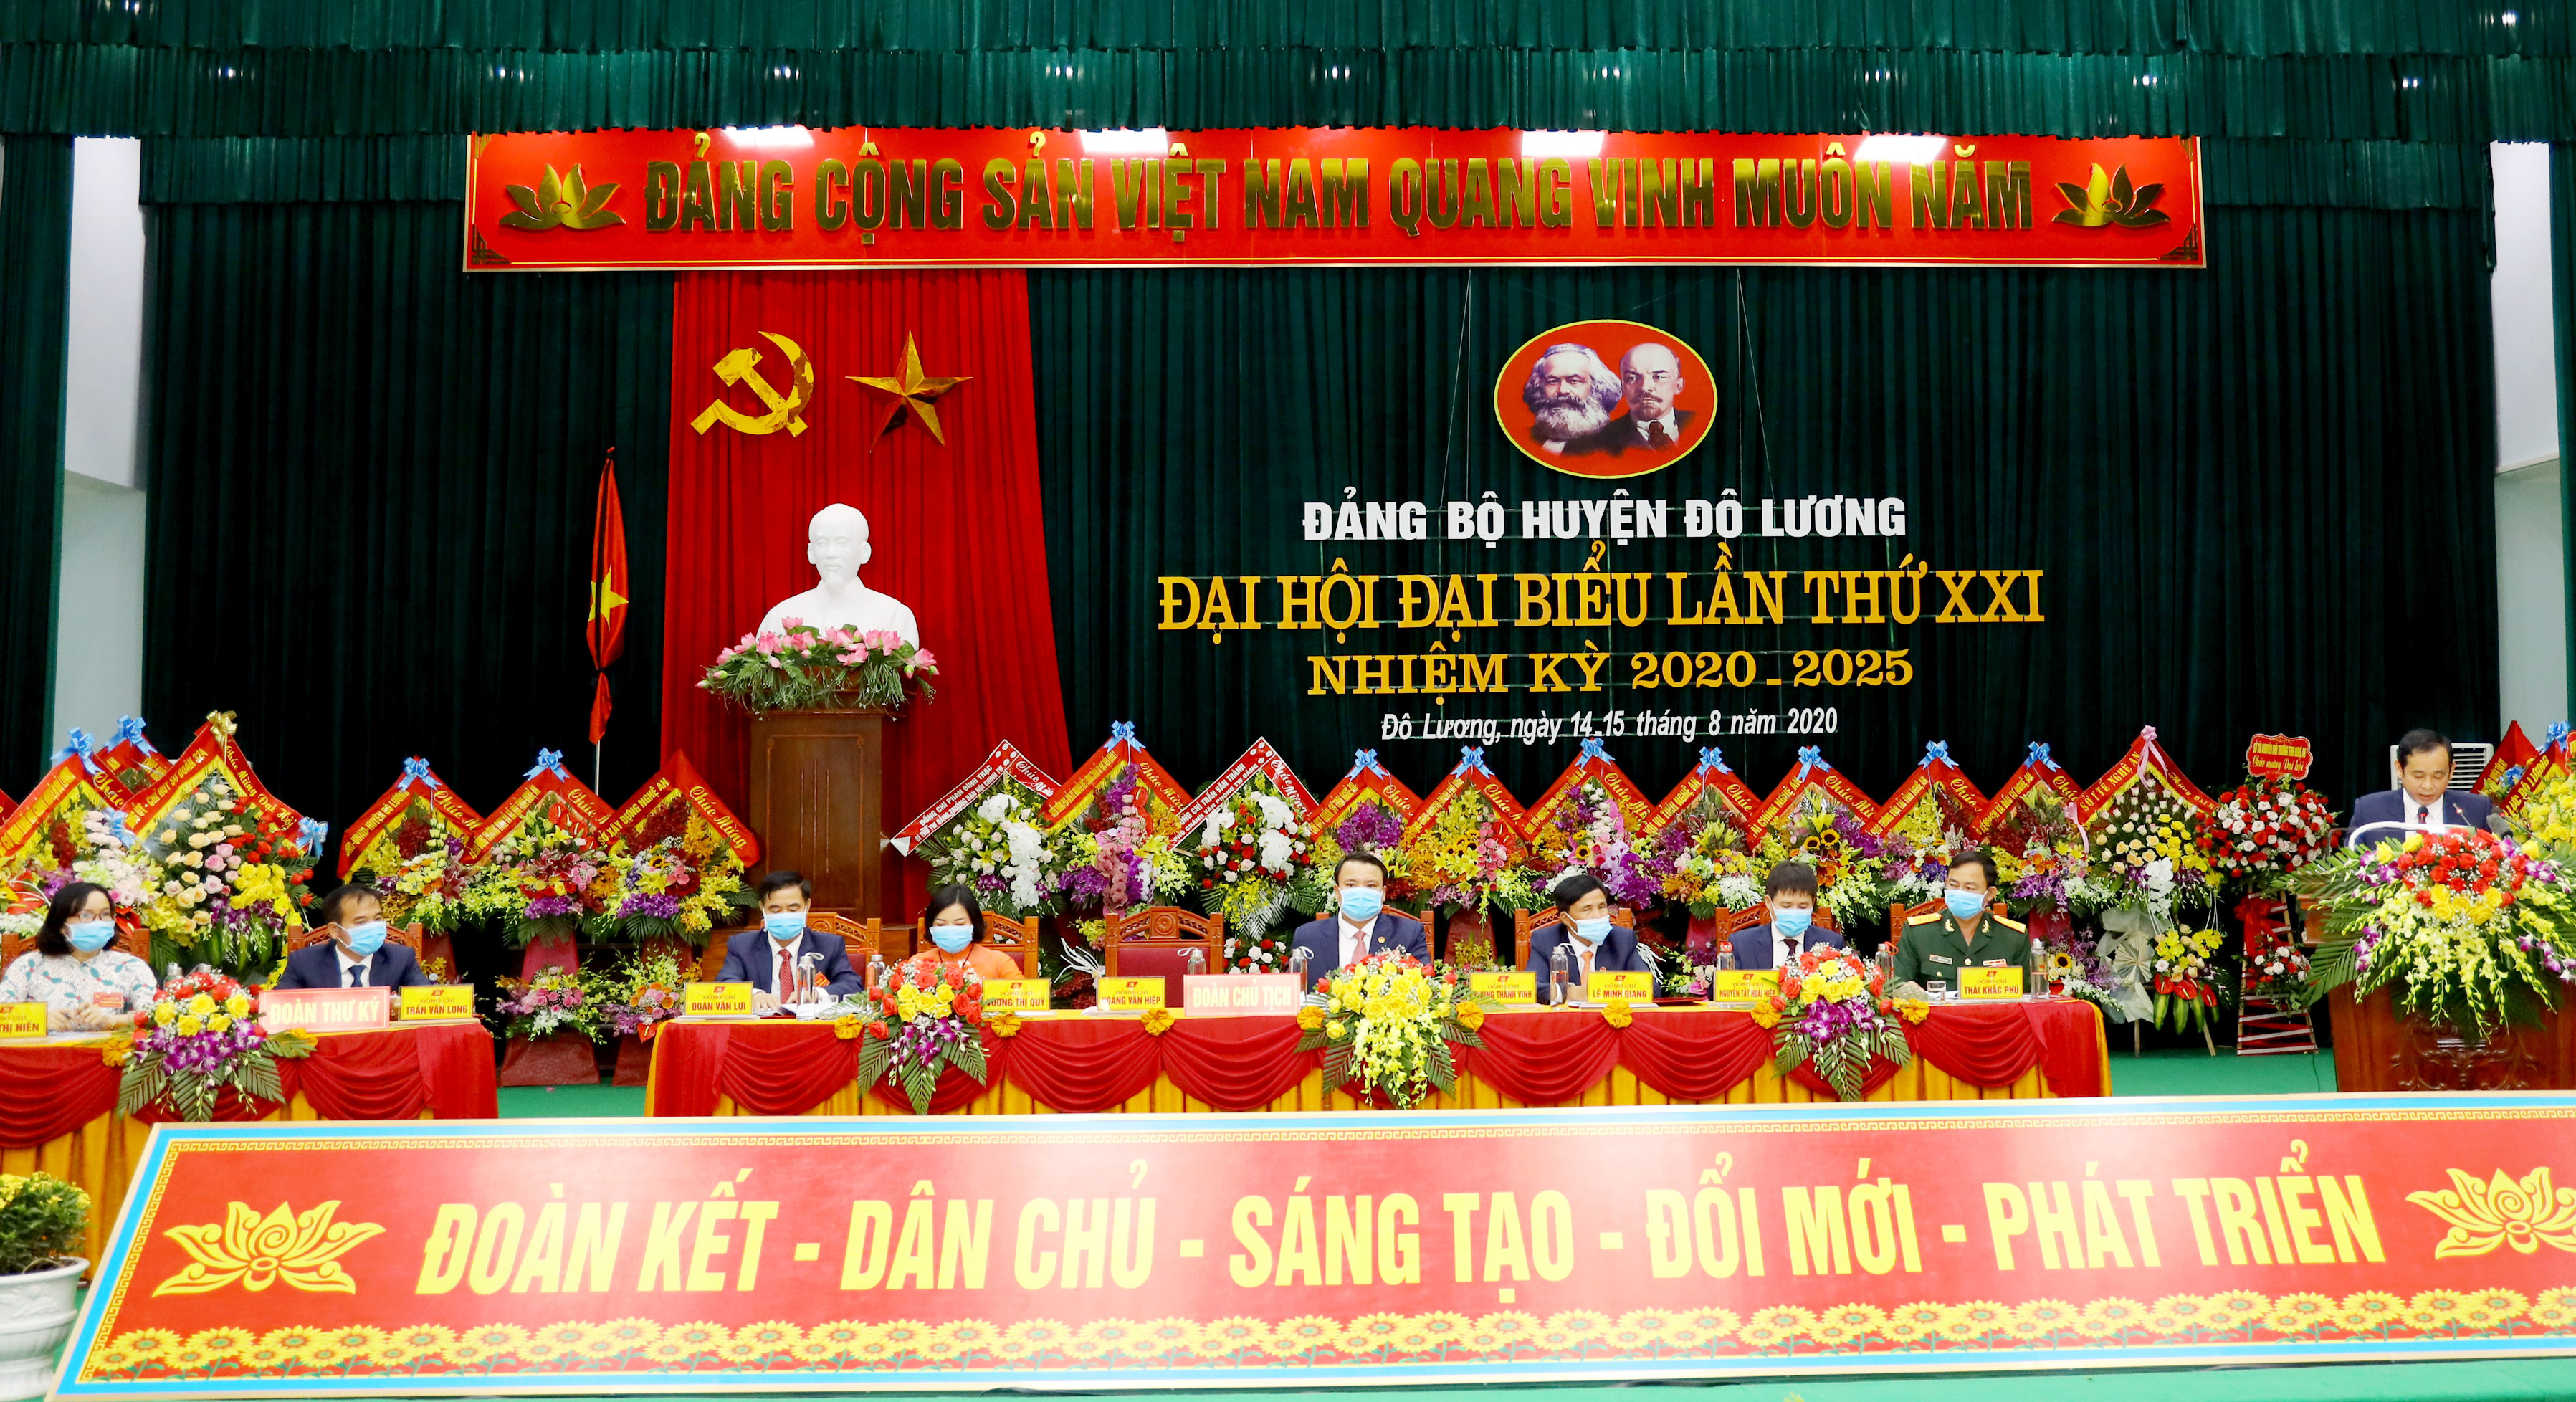 Đoàn Chủ tịch và Đoàn thư ký Đại hội Đại biêu Đảng bộ huyện Đô Lương, nhiệm kỳ 2020-2025. Ảnh Nguyên Nguyên